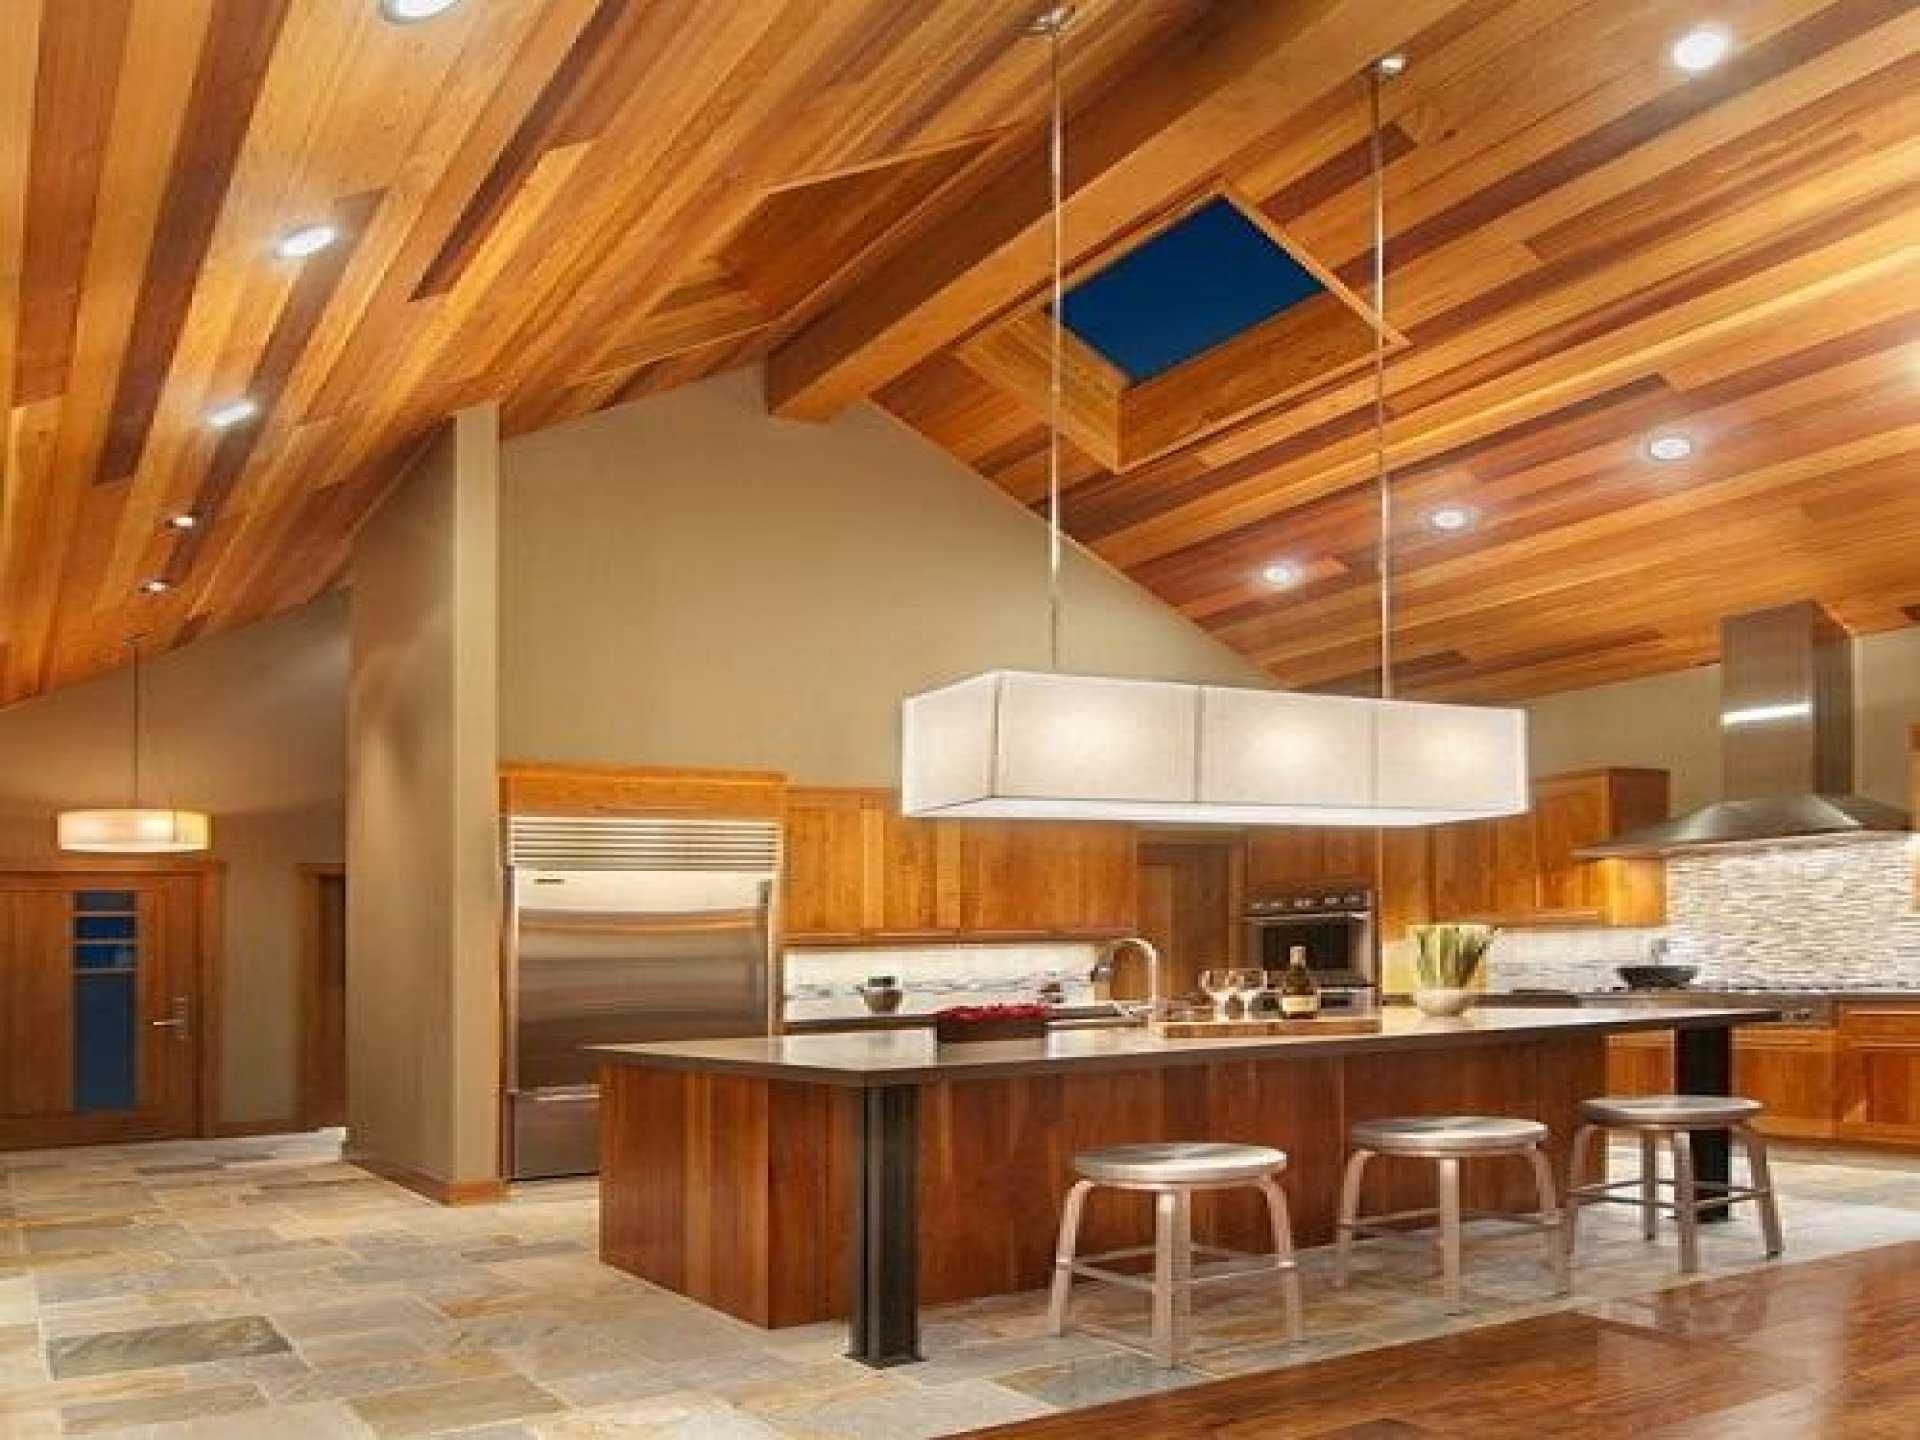 7 советов, как сделать низкий потолок в доме выше: дизайн низких потолков + фото